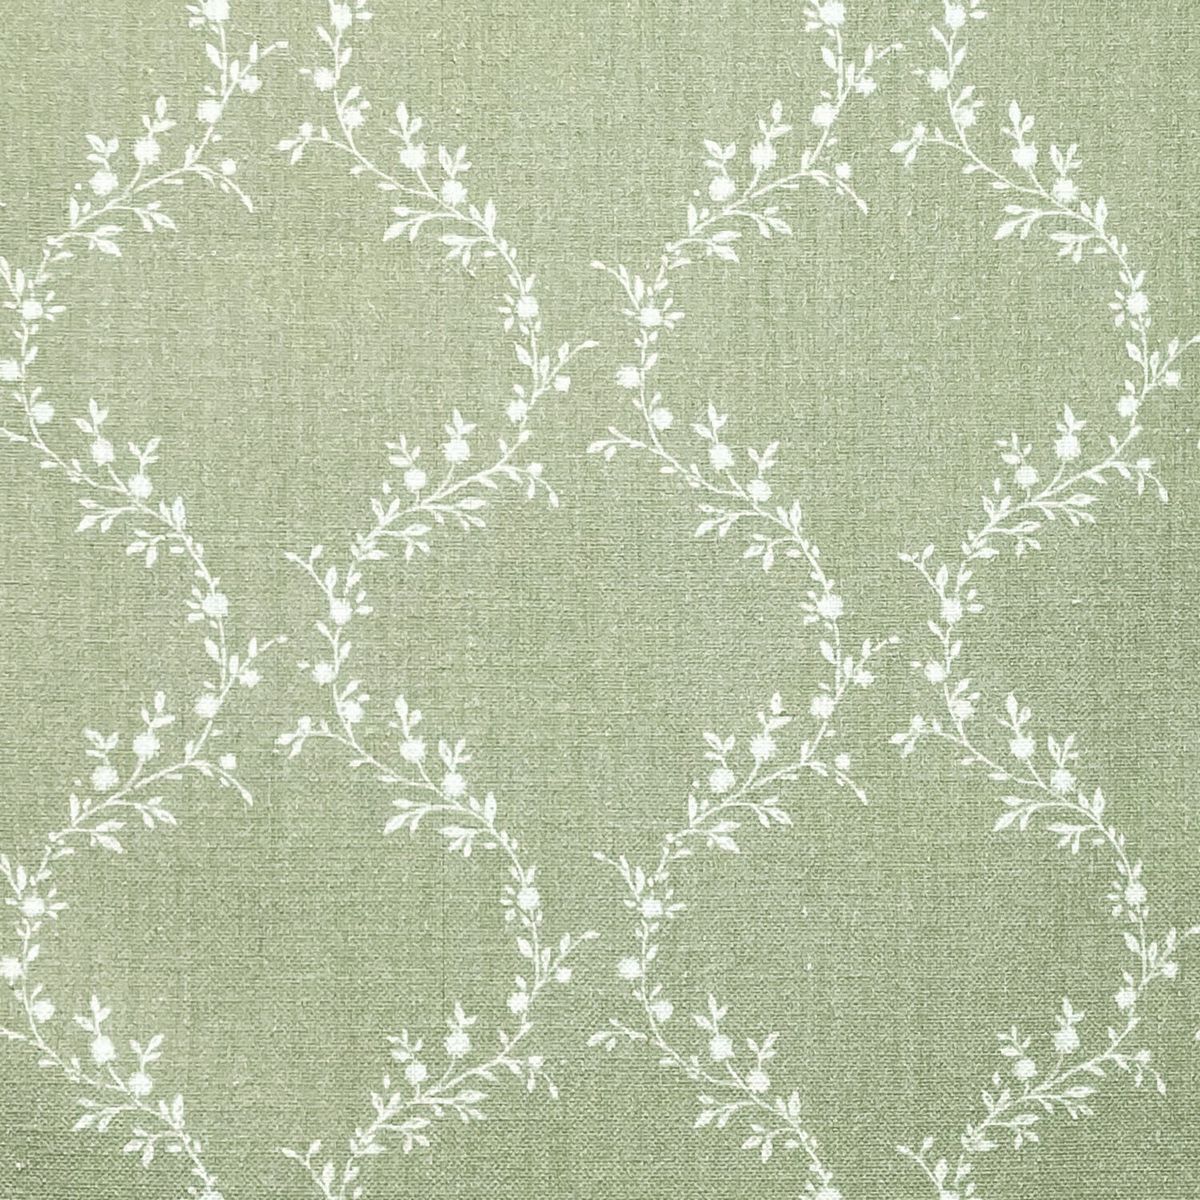 Jasmina Natural Fabric by Chatham Glyn